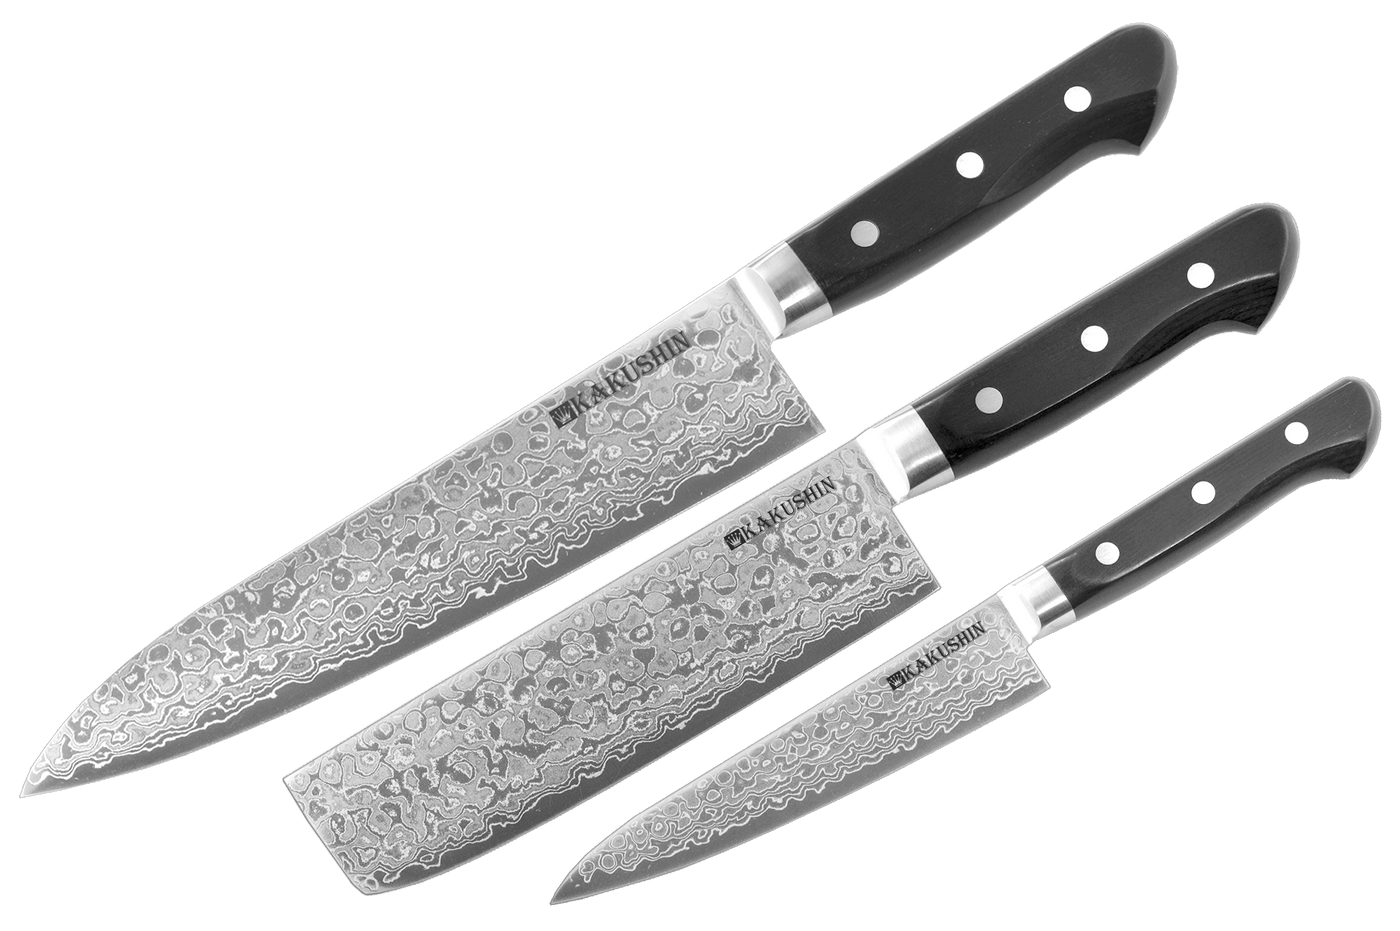 Couteau de cuisine japonais - Qualité professionnelle – CUISINE AU TOP